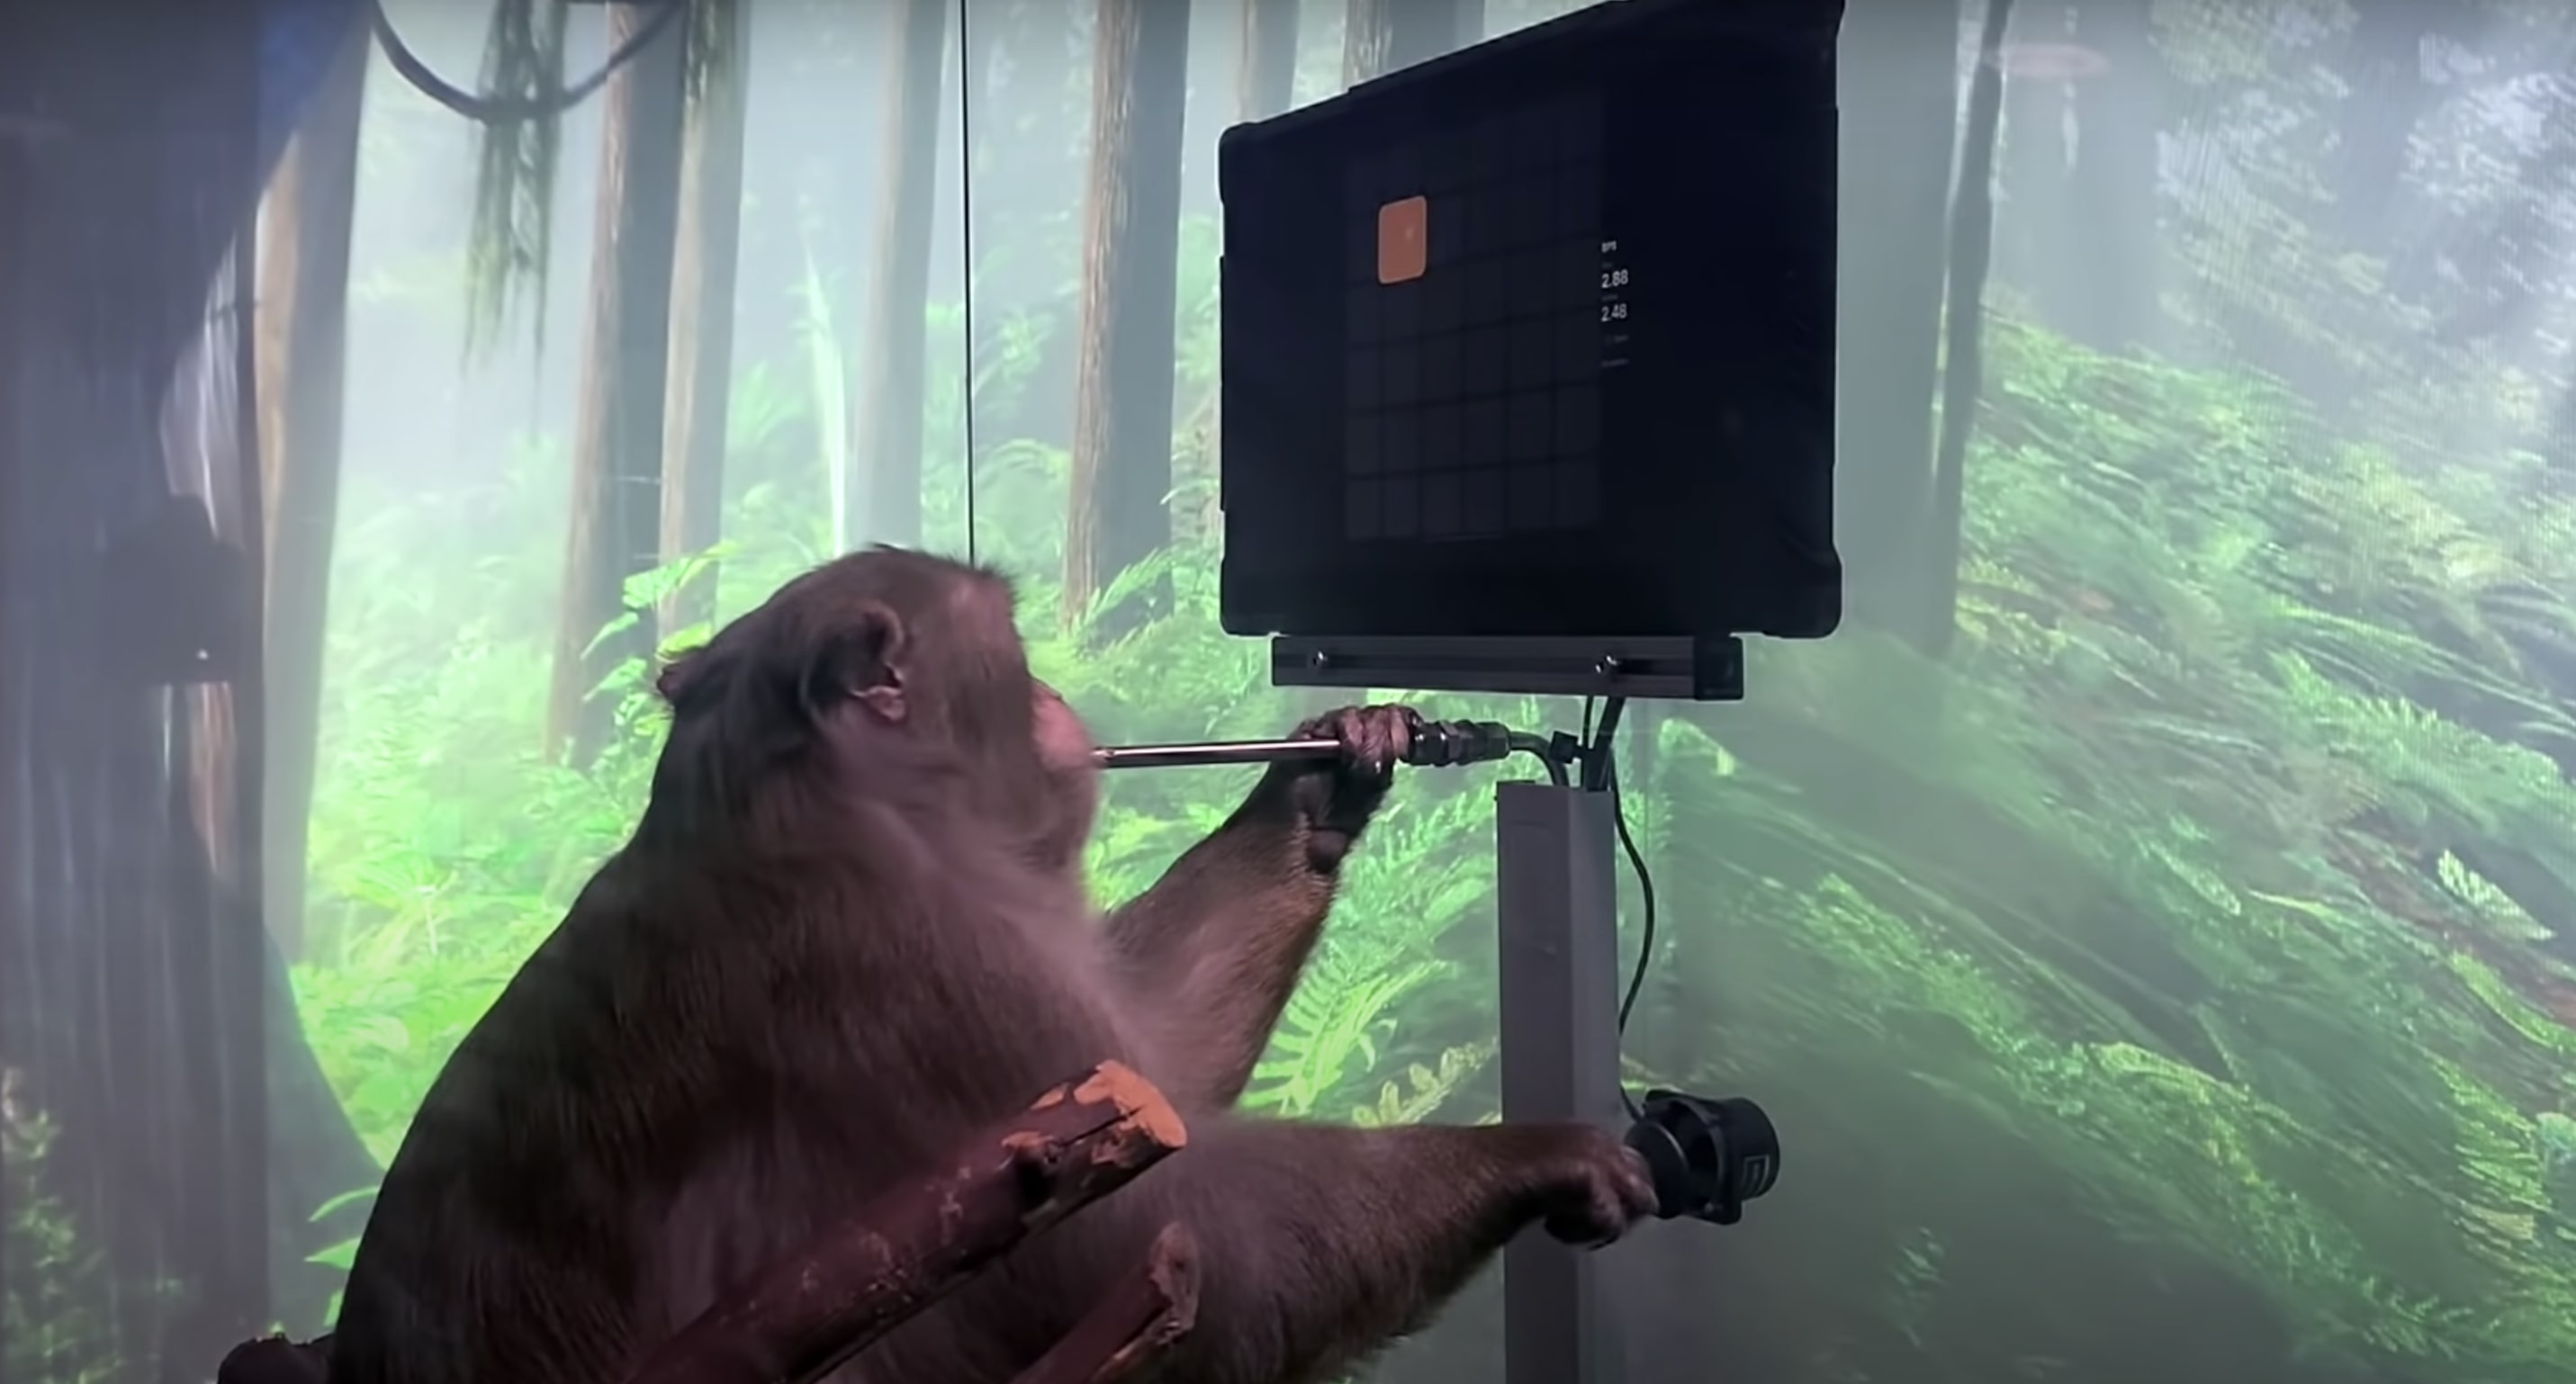 Erste Tests wurden an Makaken, einer Primatenart, durchgeführt. Bei einem Test nutzte das Tier seinen Geist über eine drahtlose Verbindung, um einen Joystick zu bedienen